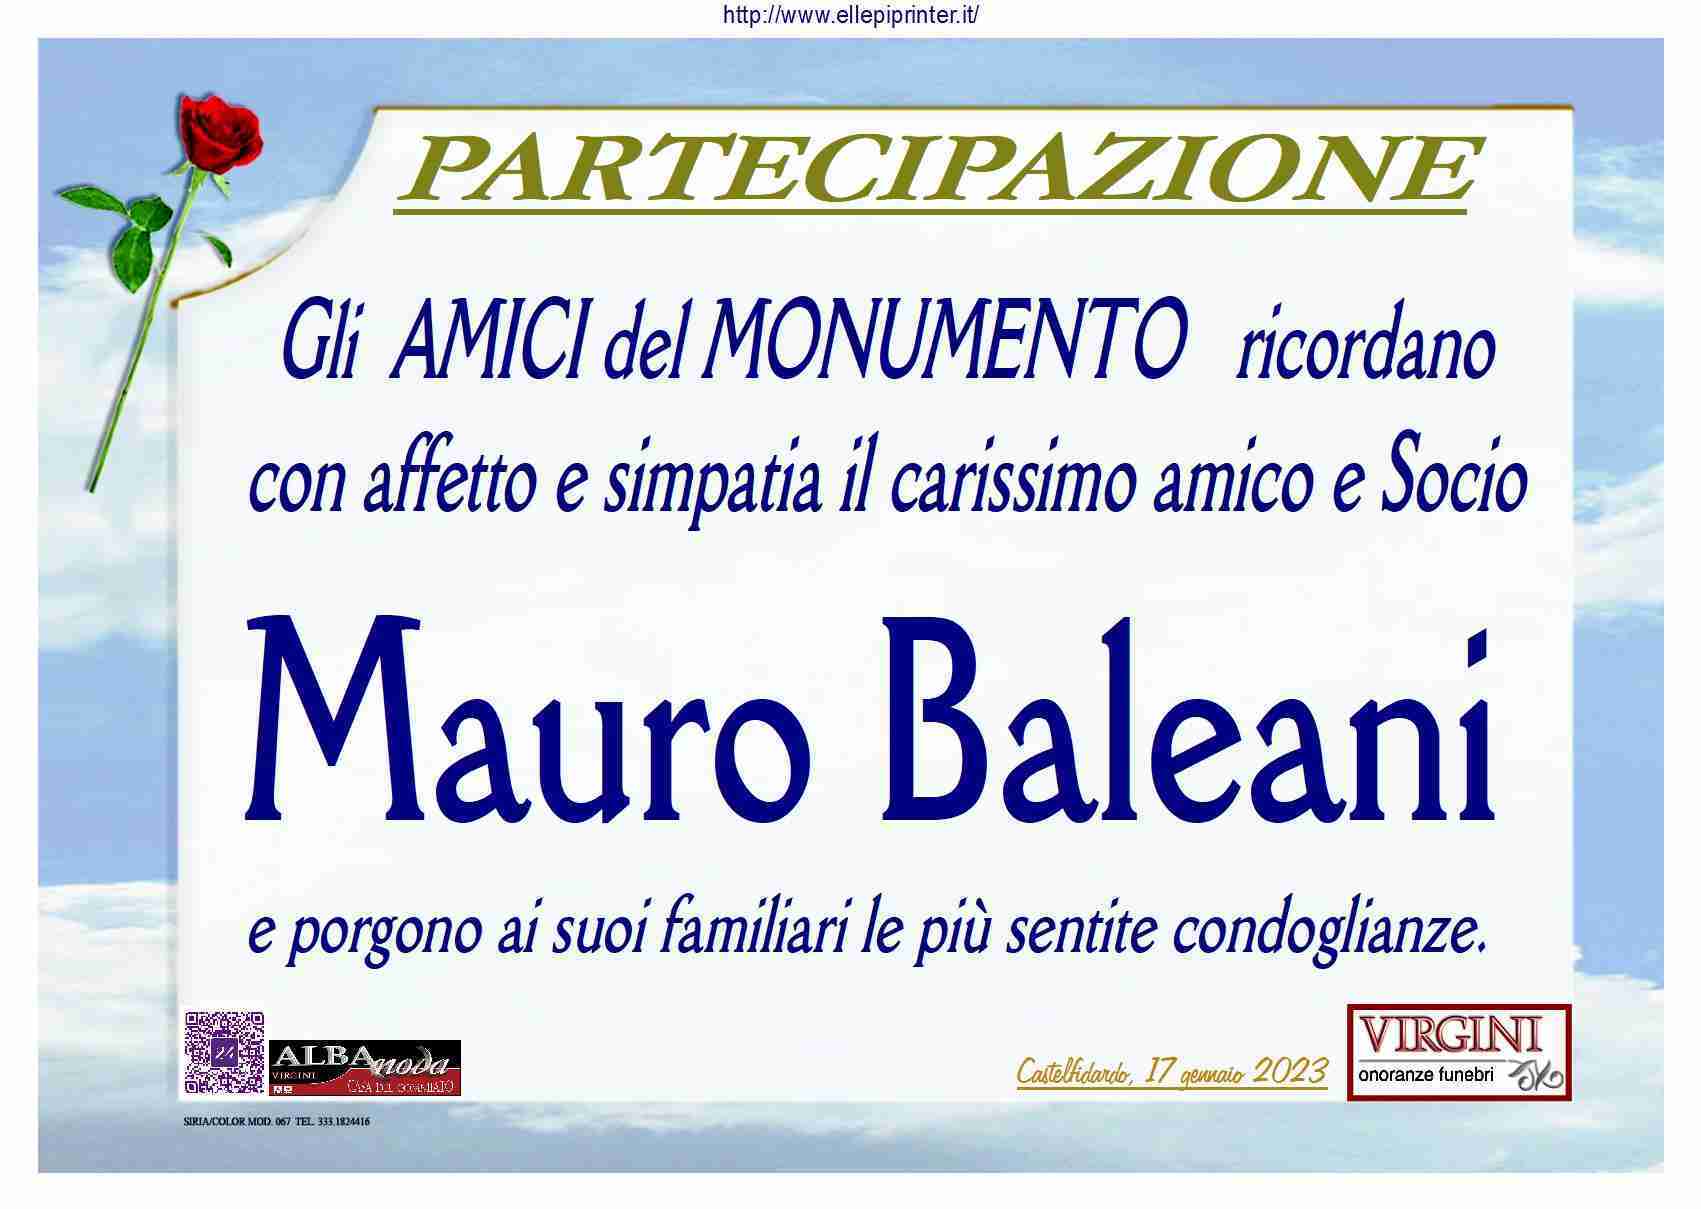 Mauro Baleani